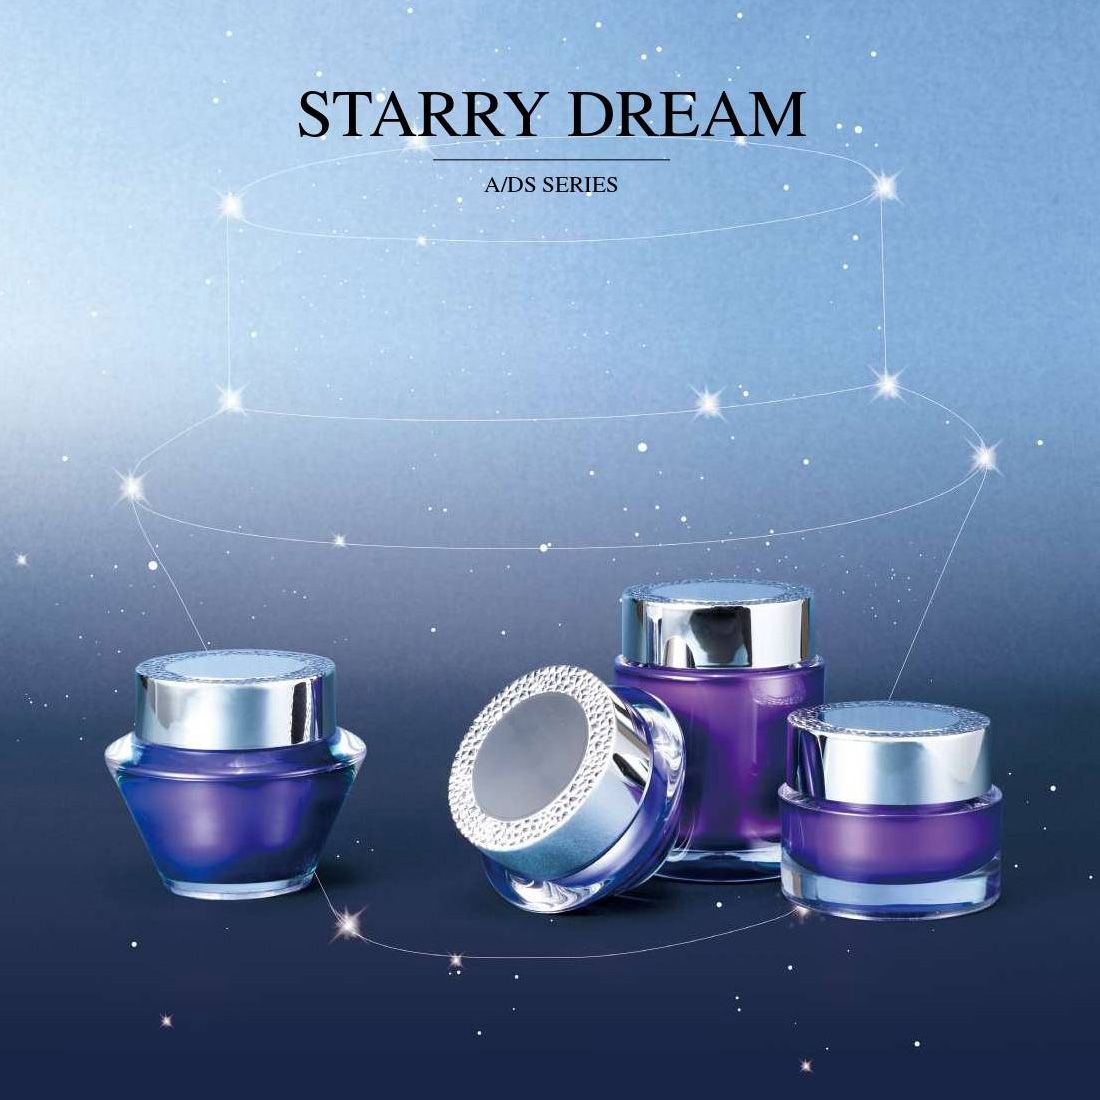 Starry Dream (акриловая роскошная упаковка для косметики и средств по уходу за кожей) Серия А / DS